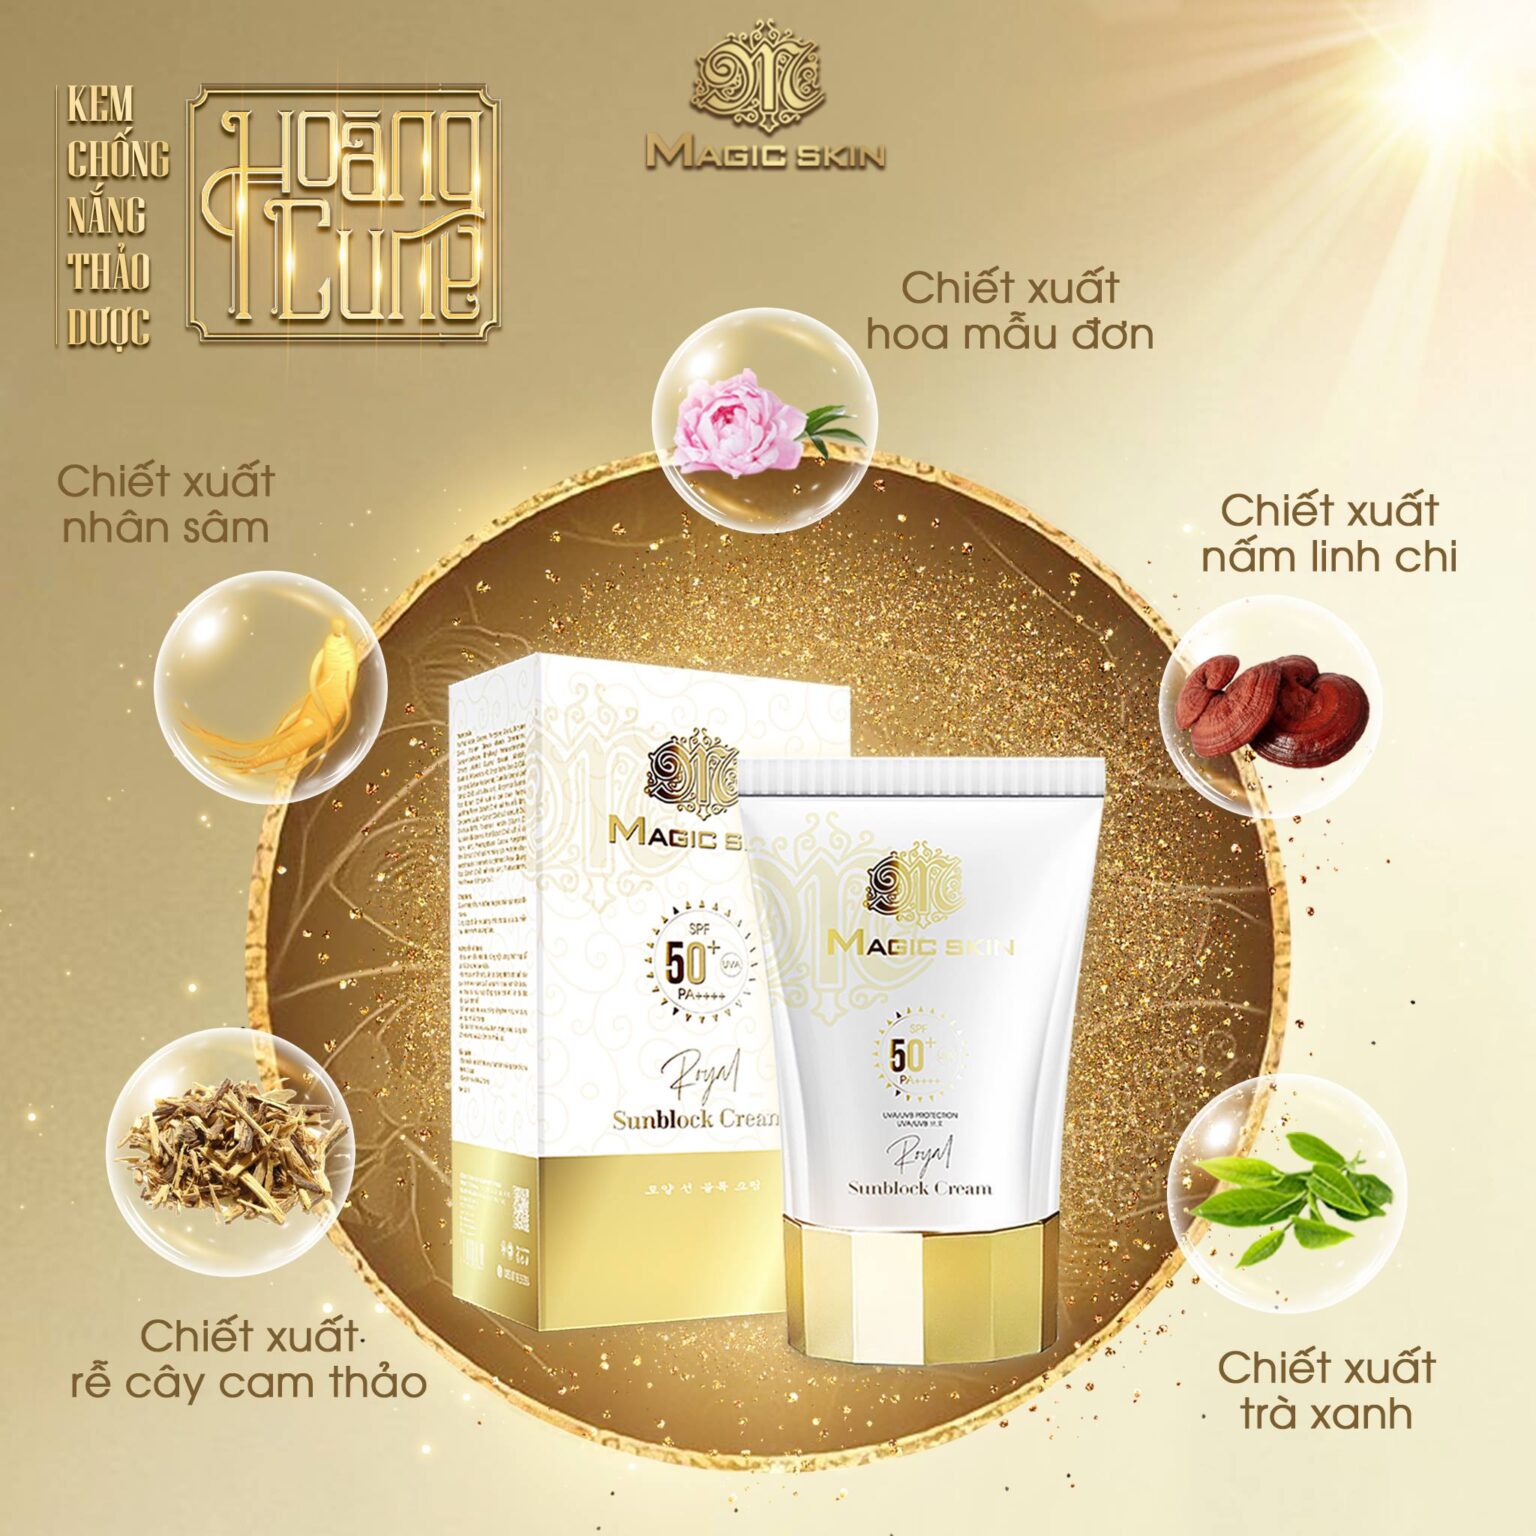 Kem Chống Nắng Royal Sunblock Cream Magic Skin - Bảo Vệ Da Của Bạn Tuyệt Đối Suốt 12H